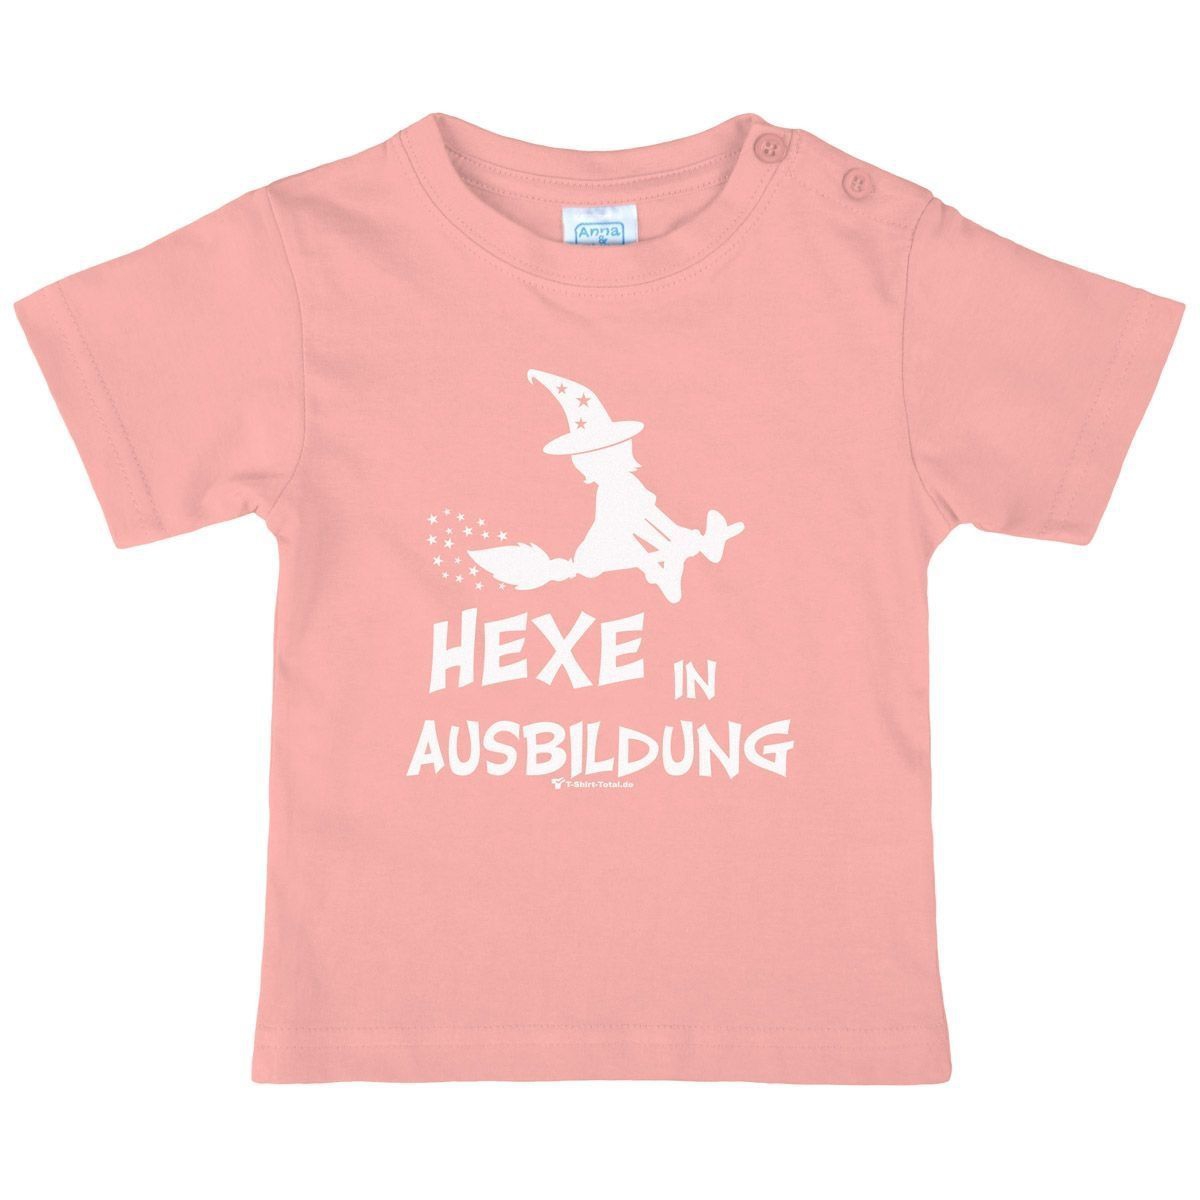 Hexe in Ausbildung Kinder T-Shirt rosa 110 / 116